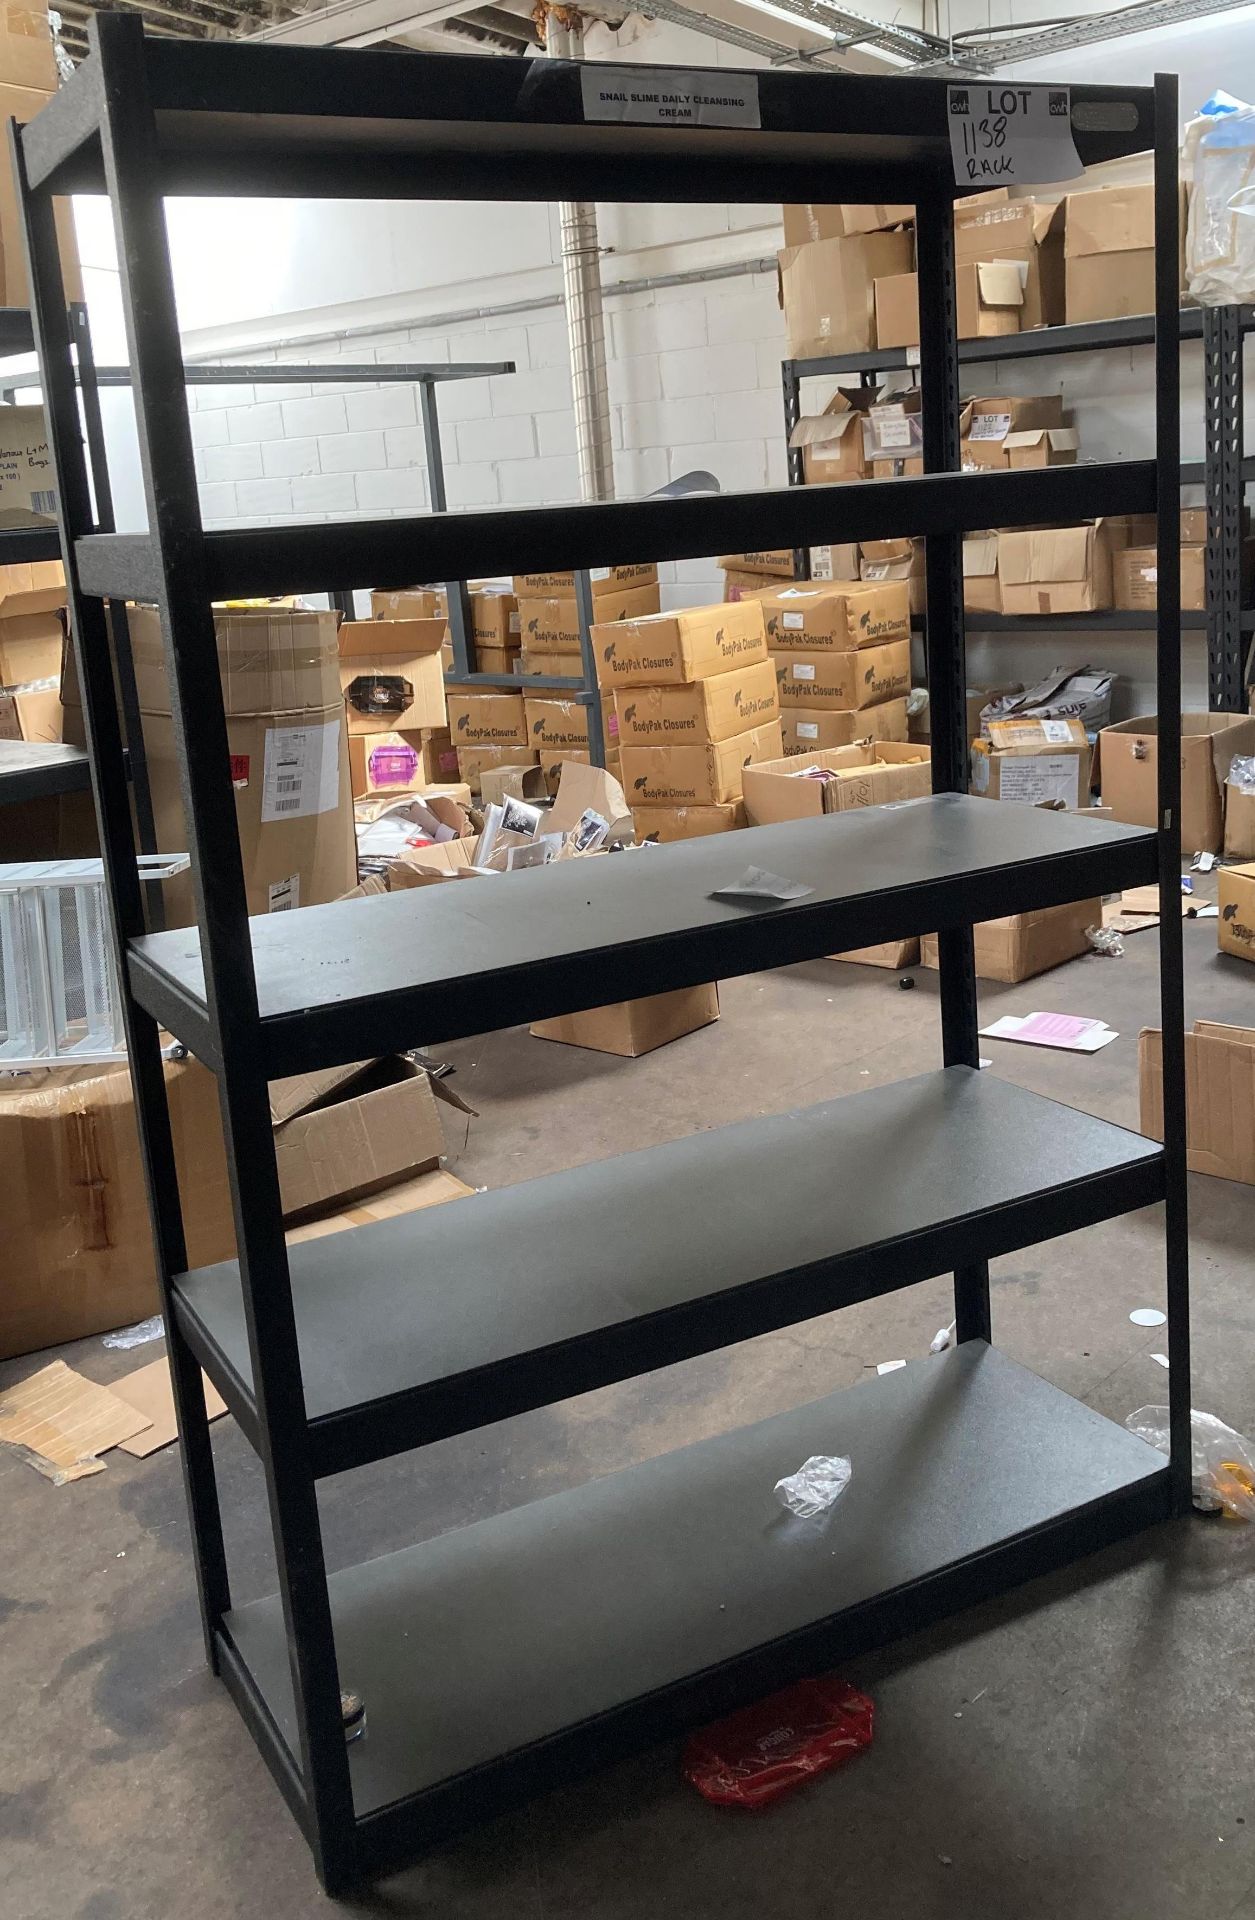 1 x five shelf metal rack by Whalen Storage - 122 x 46 x 183